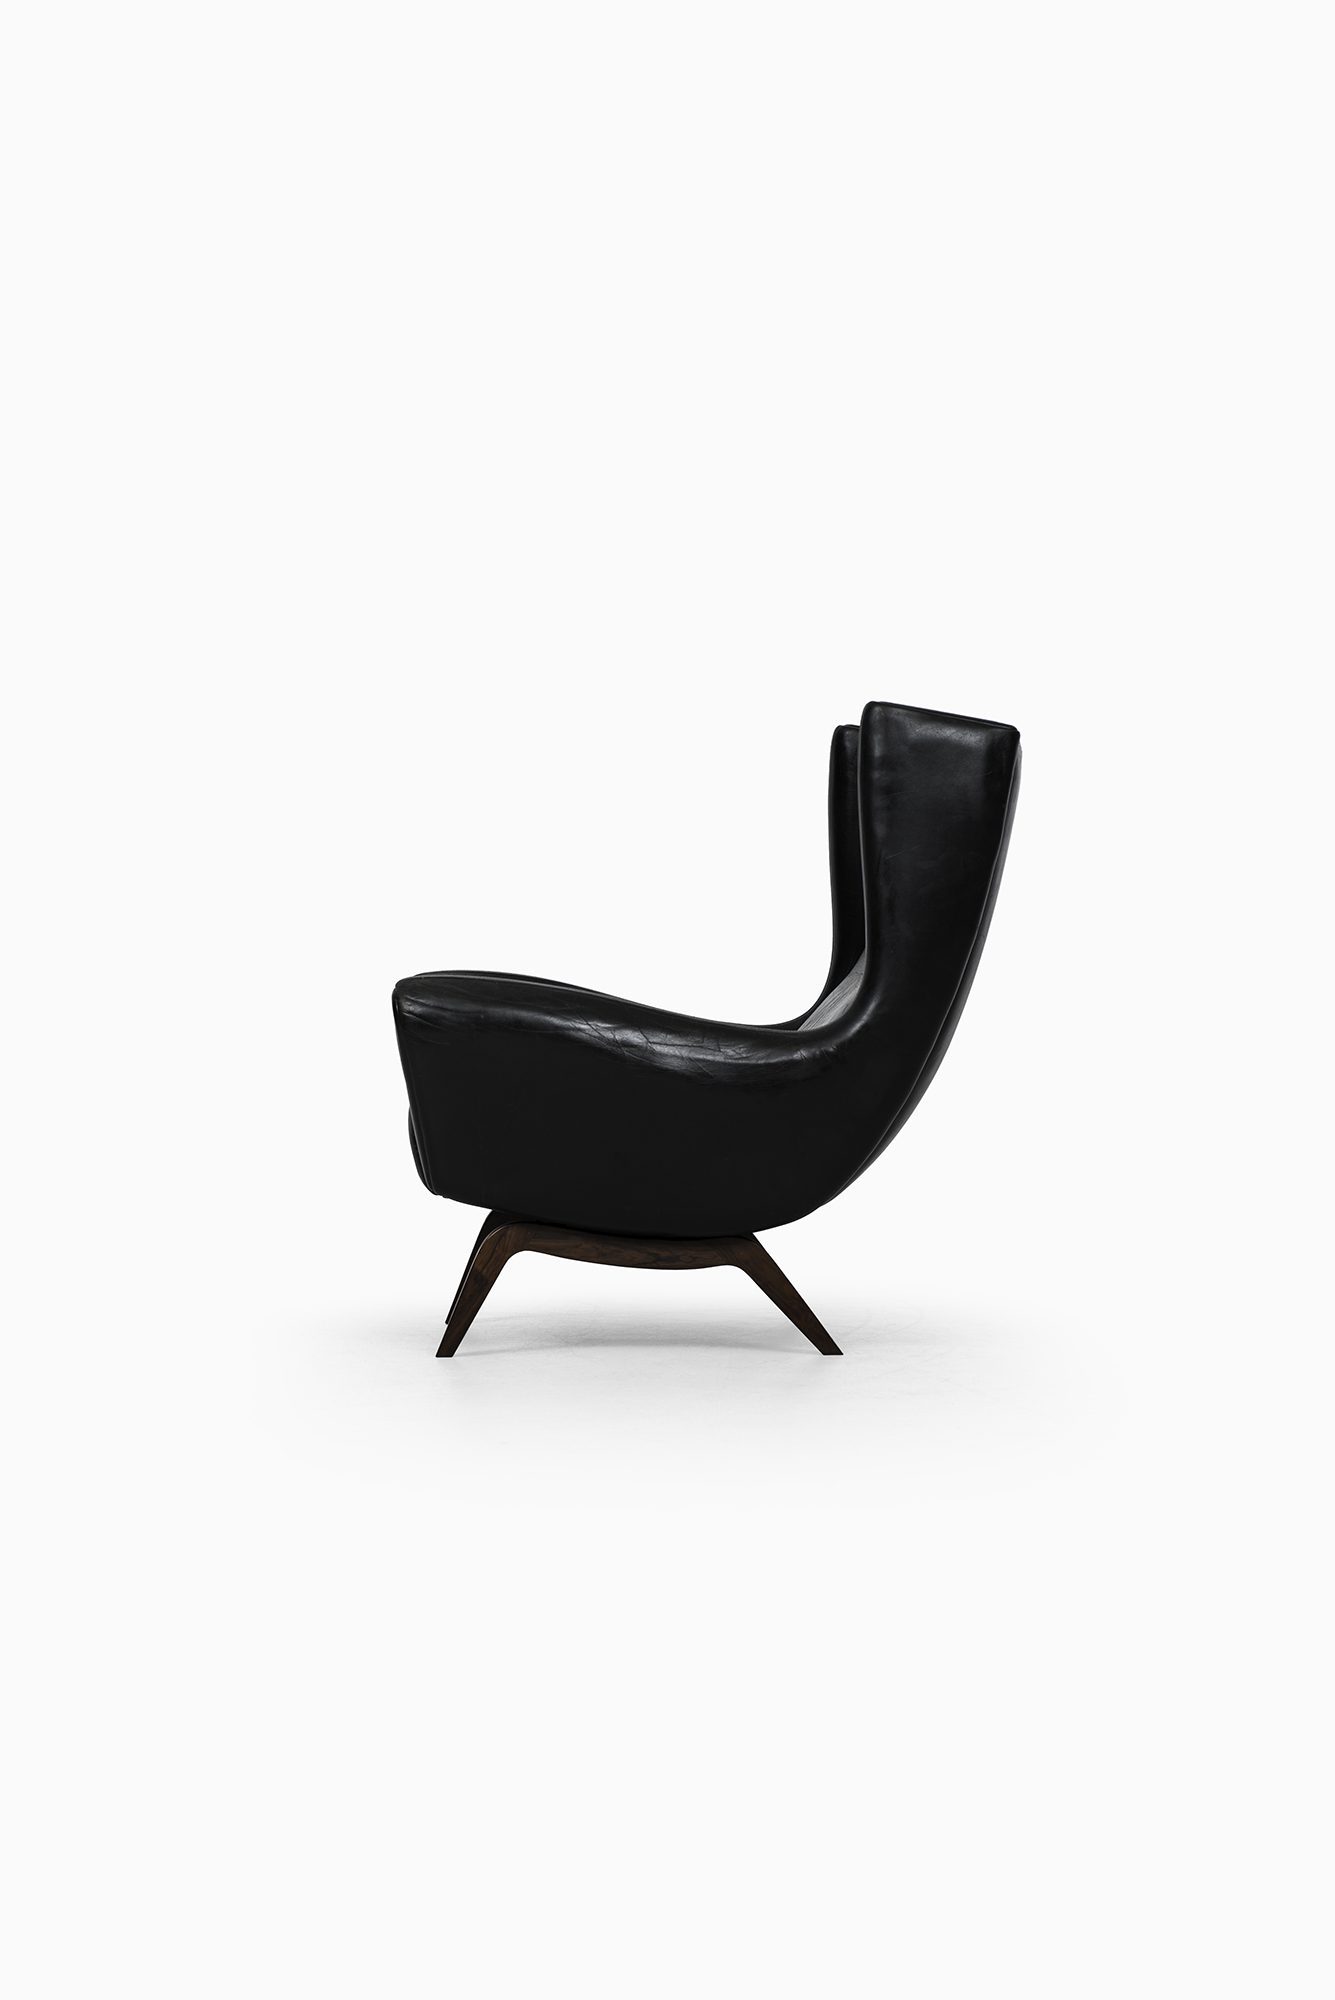 Illum Wikkelsø easy chair model 110 at Studio Schalling